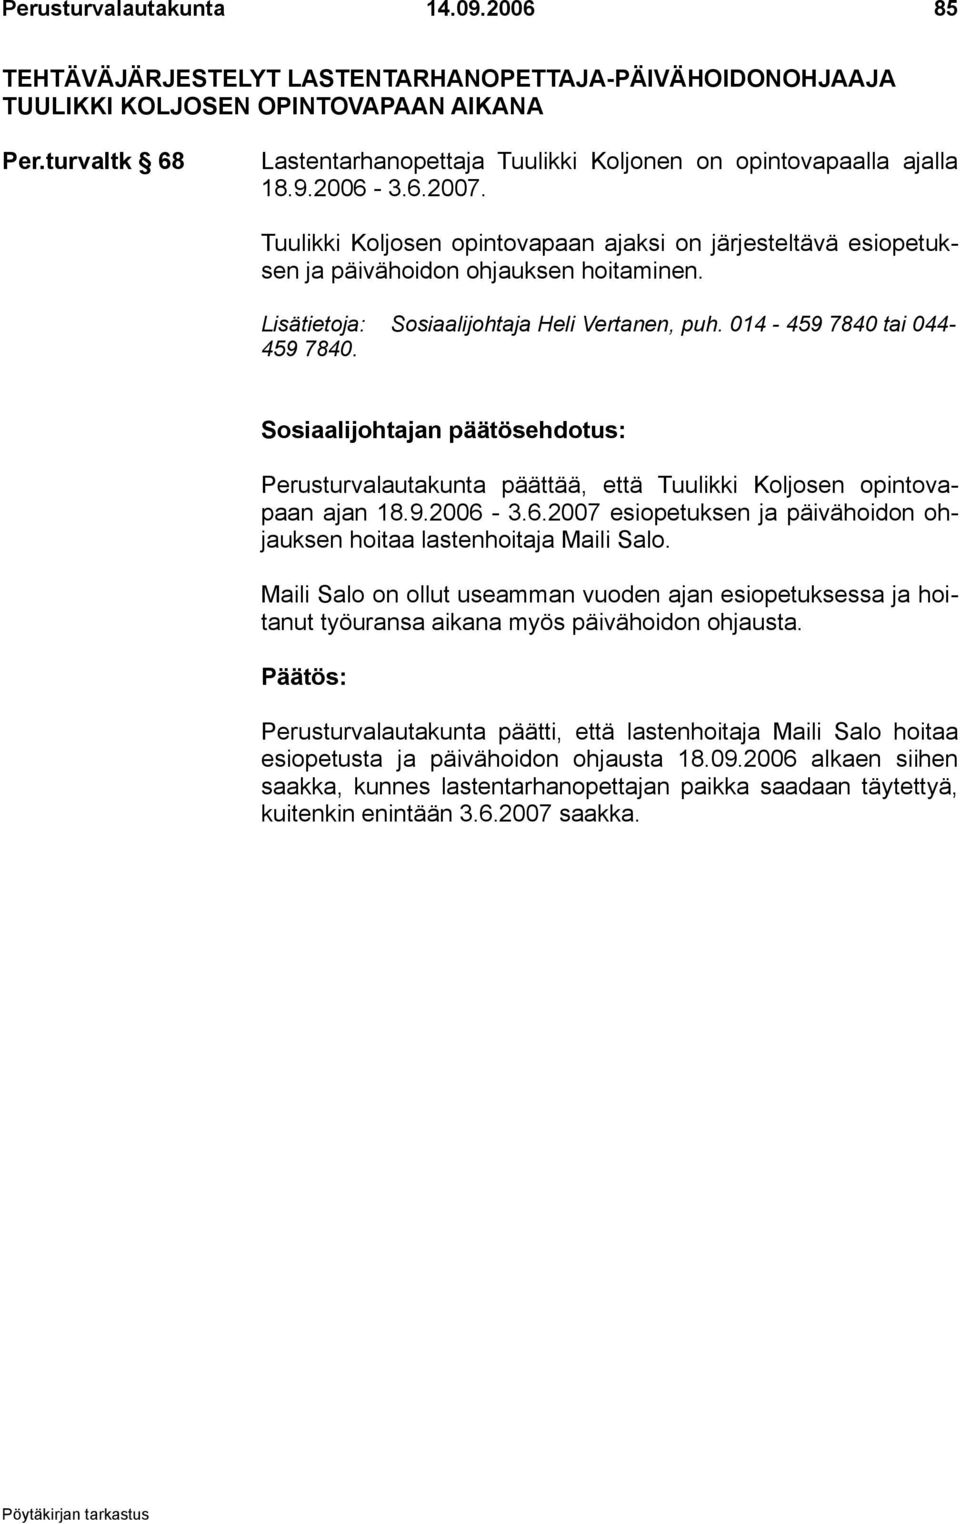 Lisätietoja: Sosiaalijohtaja Heli Vertanen, puh. 014-459 7840 tai 044-459 7840. Perusturvalautakunta päättää, että Tuulikki Koljosen opintovapaan ajan 18.9.2006-